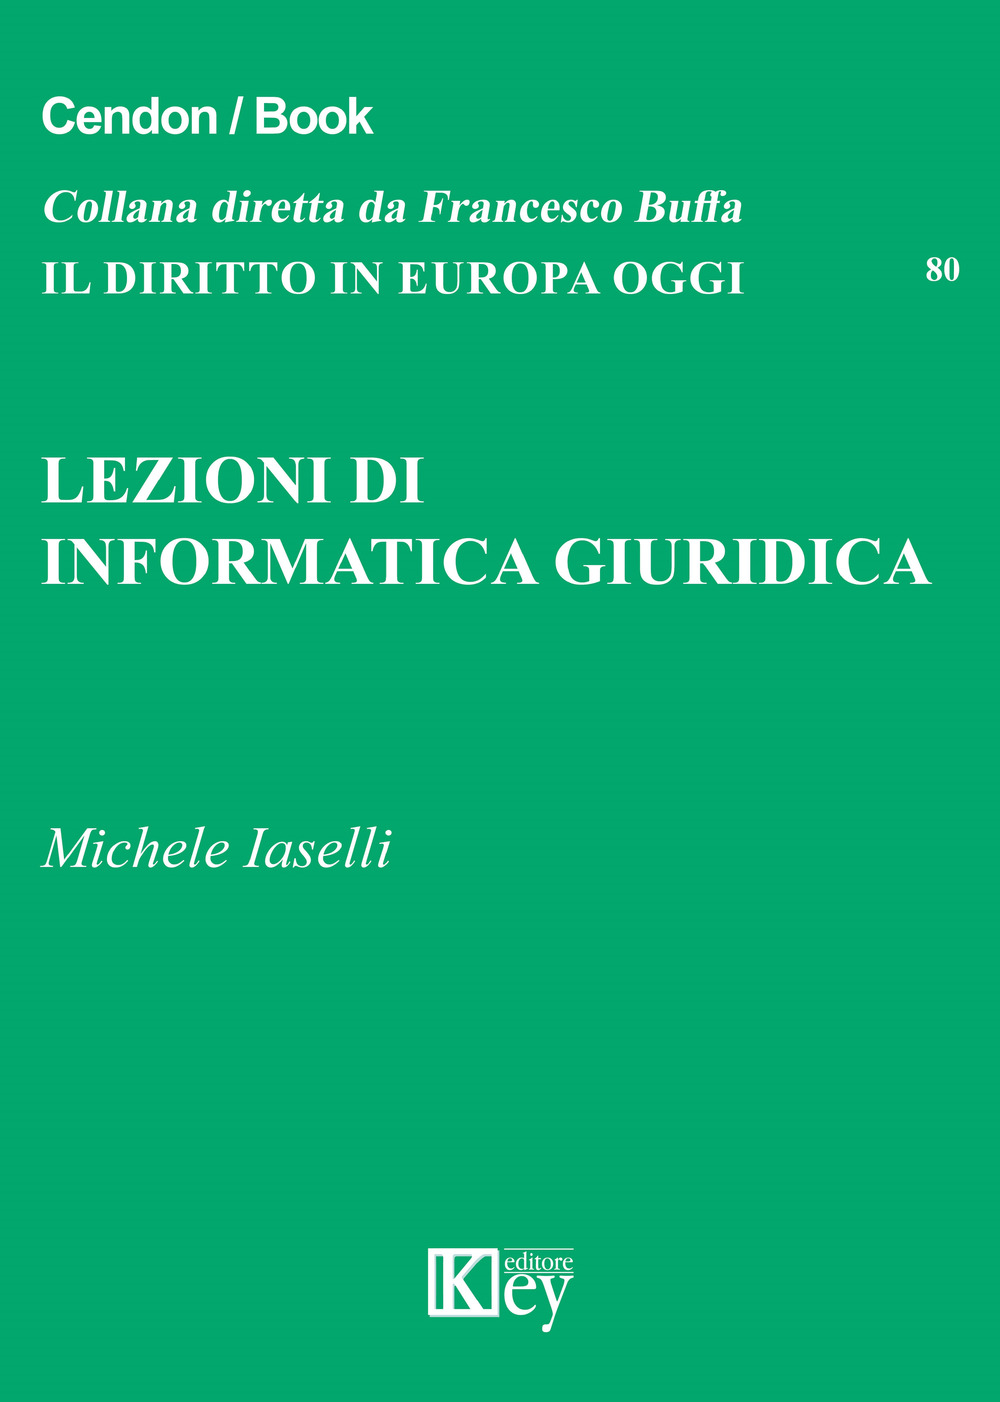 Libri Michele Iaselli - Lezioni Di Informatica Giuridica NUOVO SIGILLATO, EDIZIONE DEL 18/03/2019 SUBITO DISPONIBILE